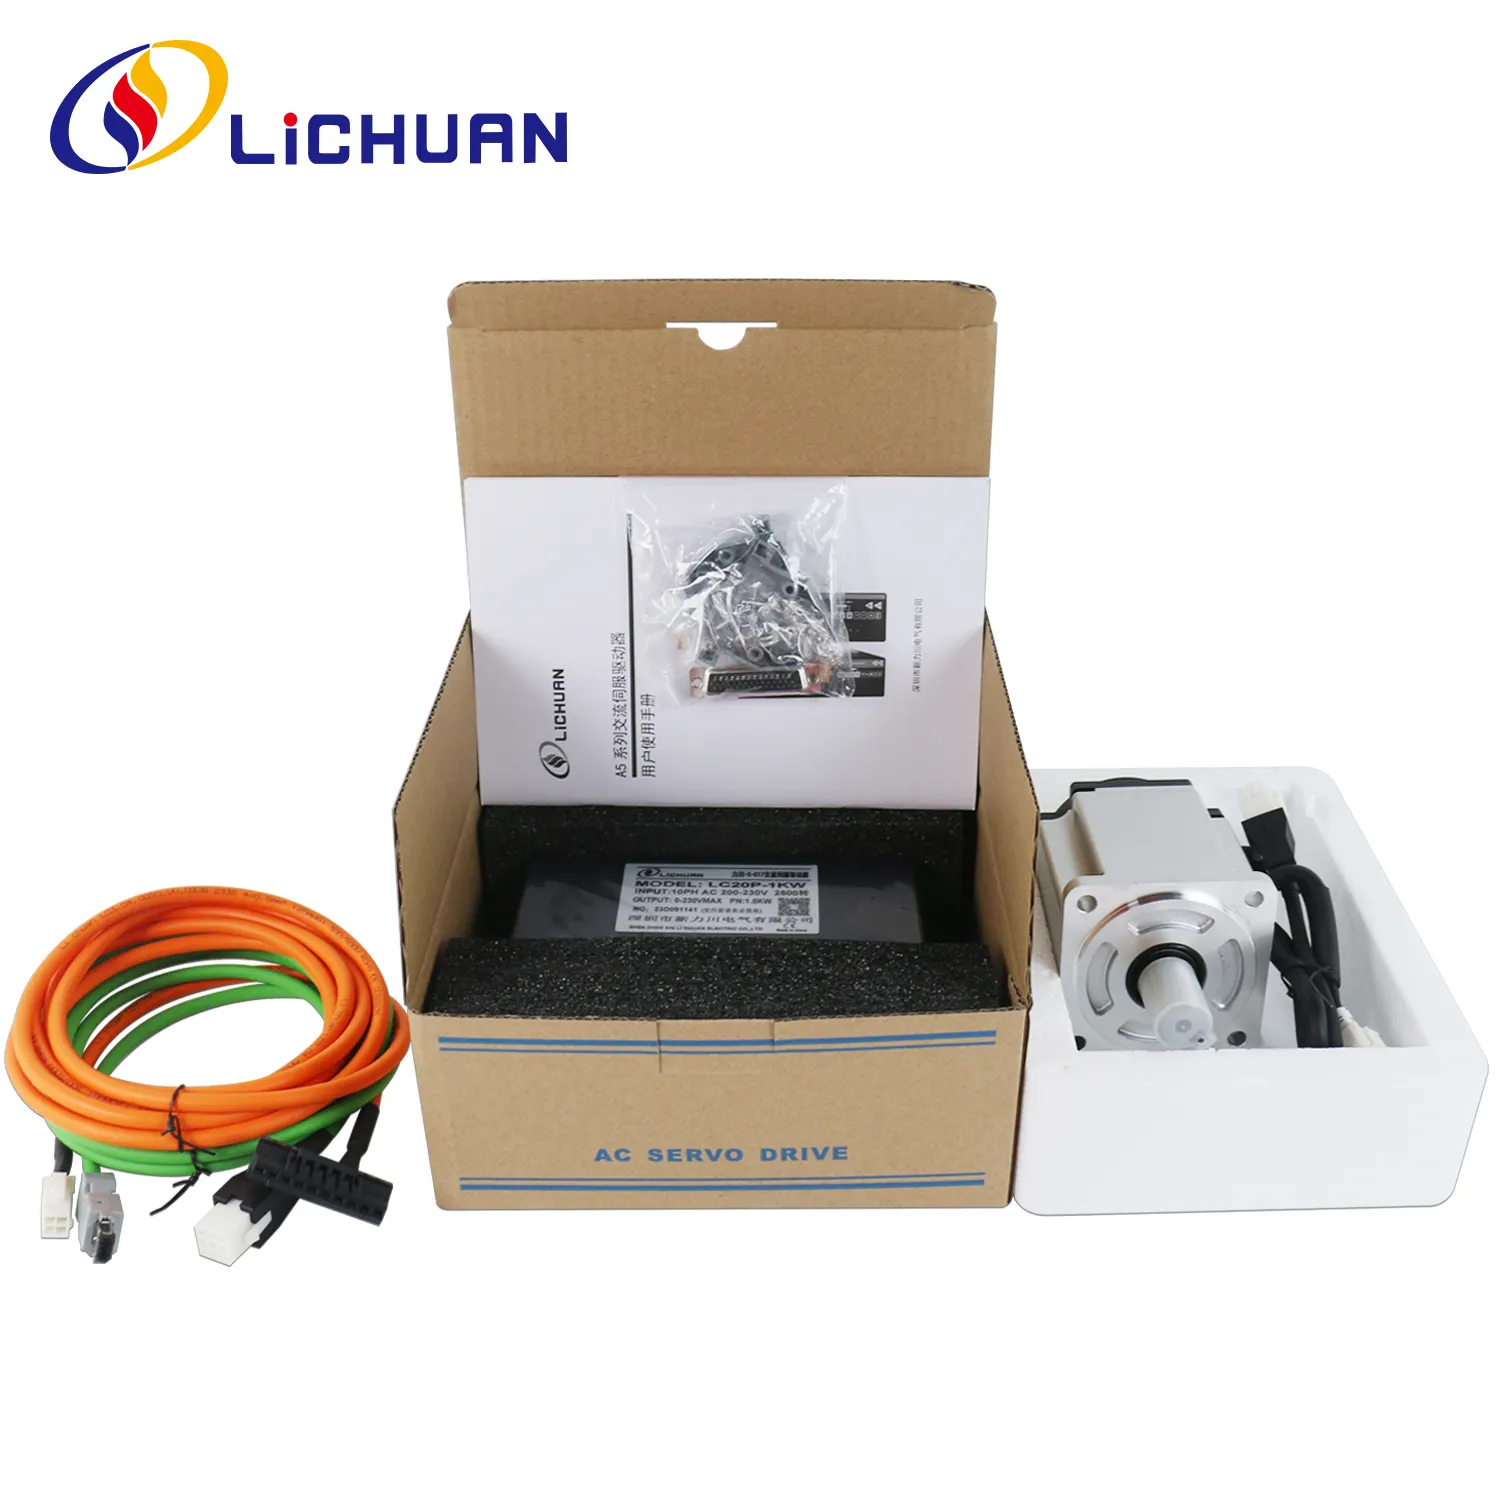 Lichuan 220V 3000 tr/min IP65 servomoteurs et pilotes AC série A5 200W 400W 600W 750W Kit de pilotes de servomoteur AC pour Robot